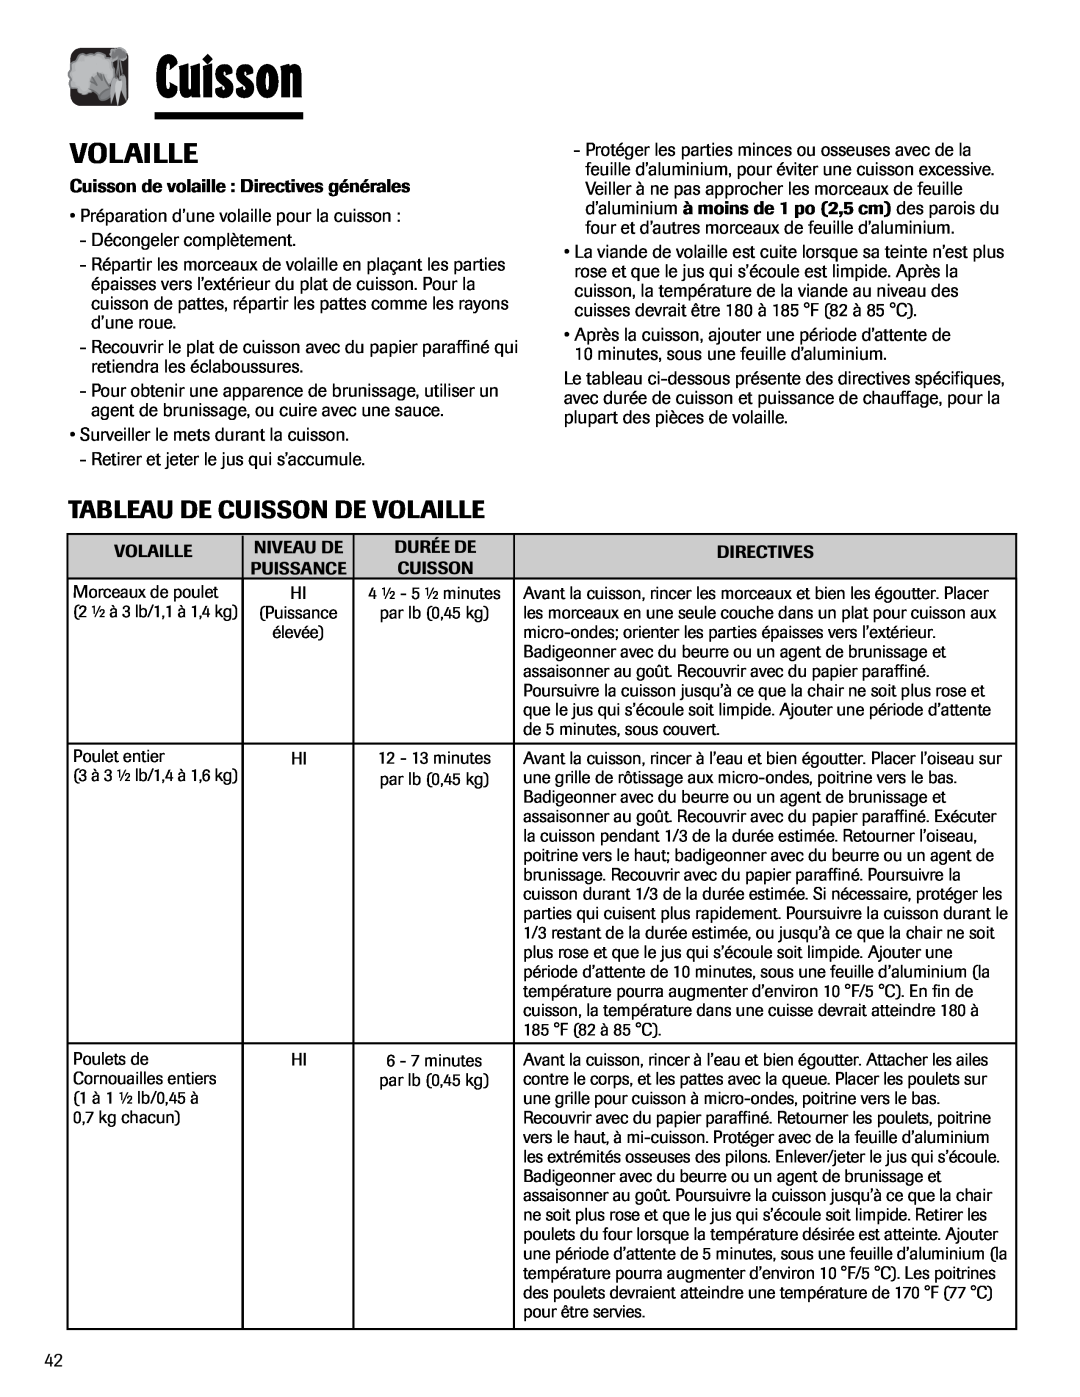 Maytag UMV1152BA important safety instructions Tableau De Cuisson De Volaille 